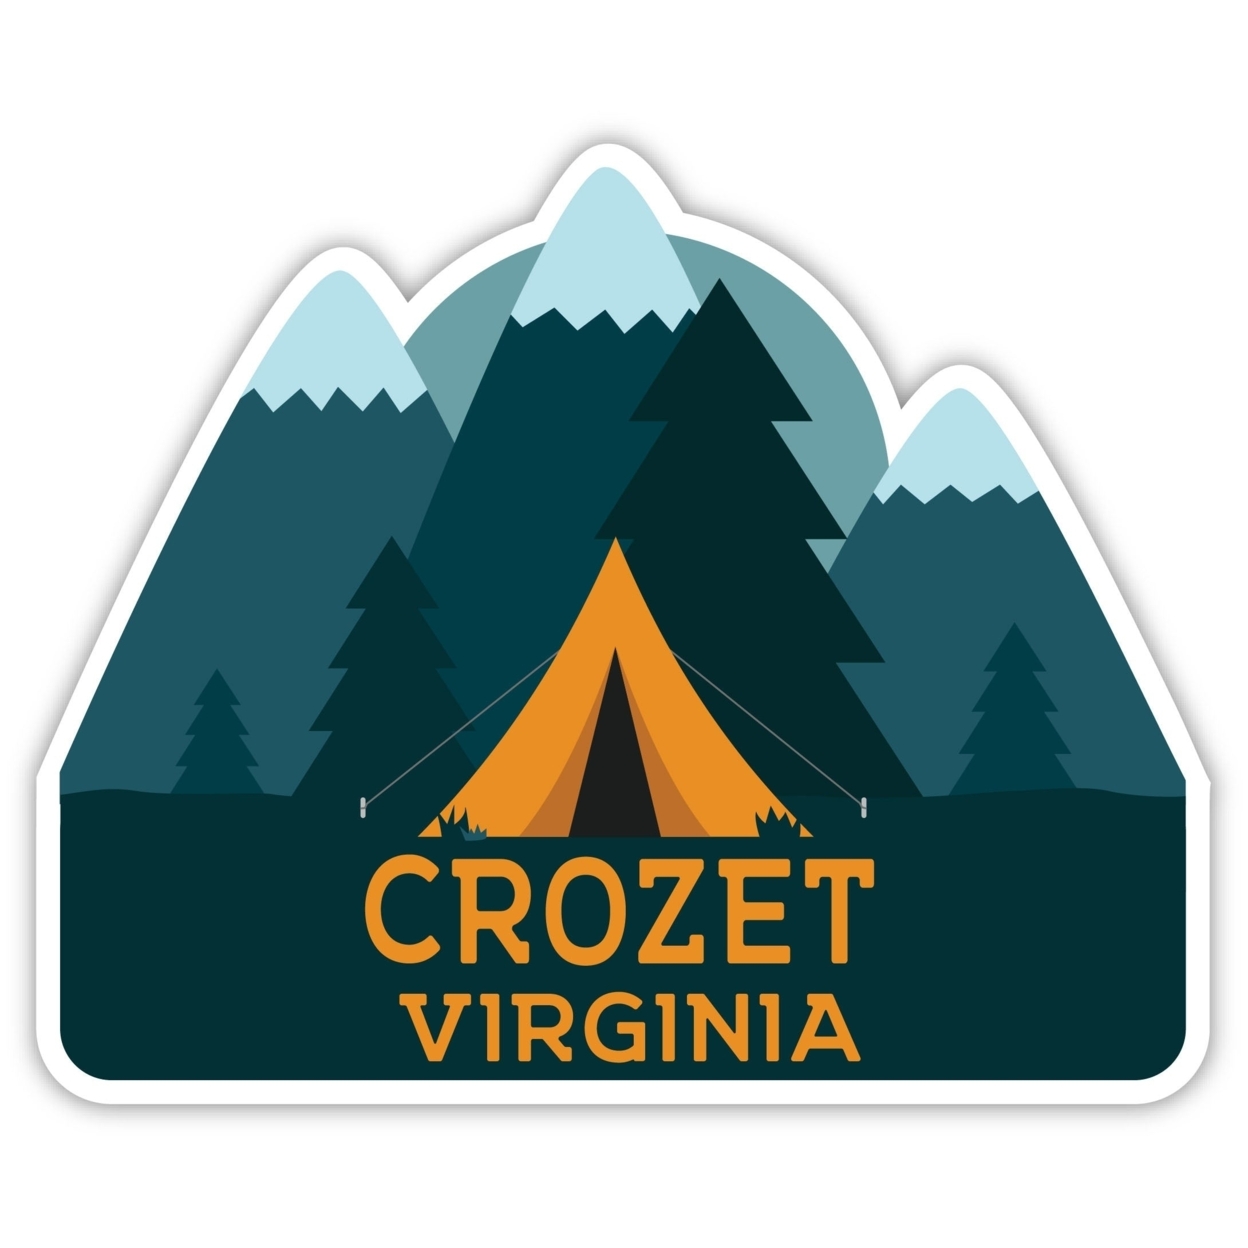 Crozet Virginia Souvenir Decorative Stickers (Choose Theme And Size) - Single Unit, 10-Inch, Tent